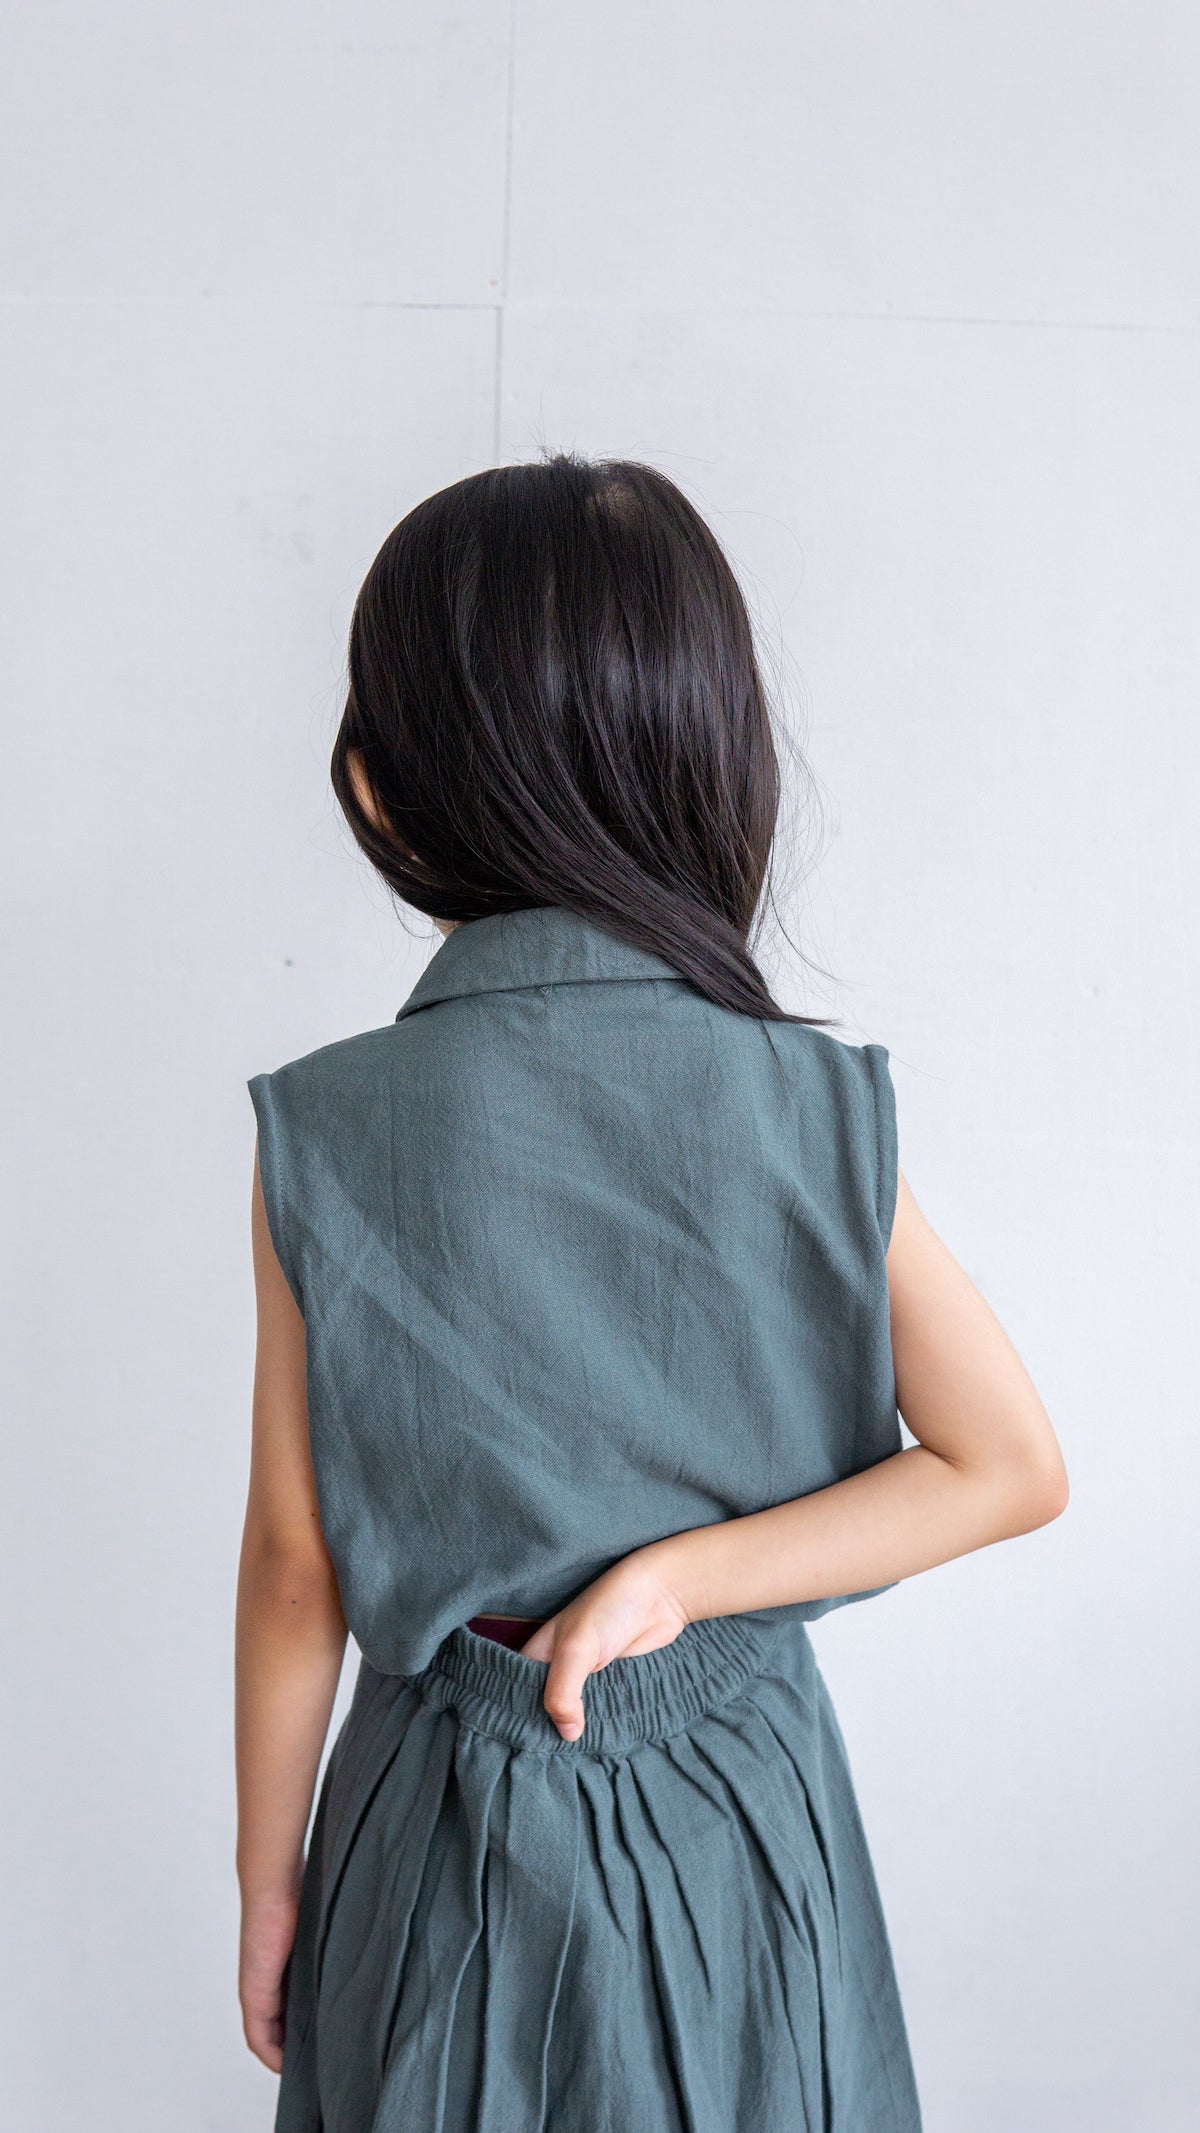 Mini June Linen Skirt - Green